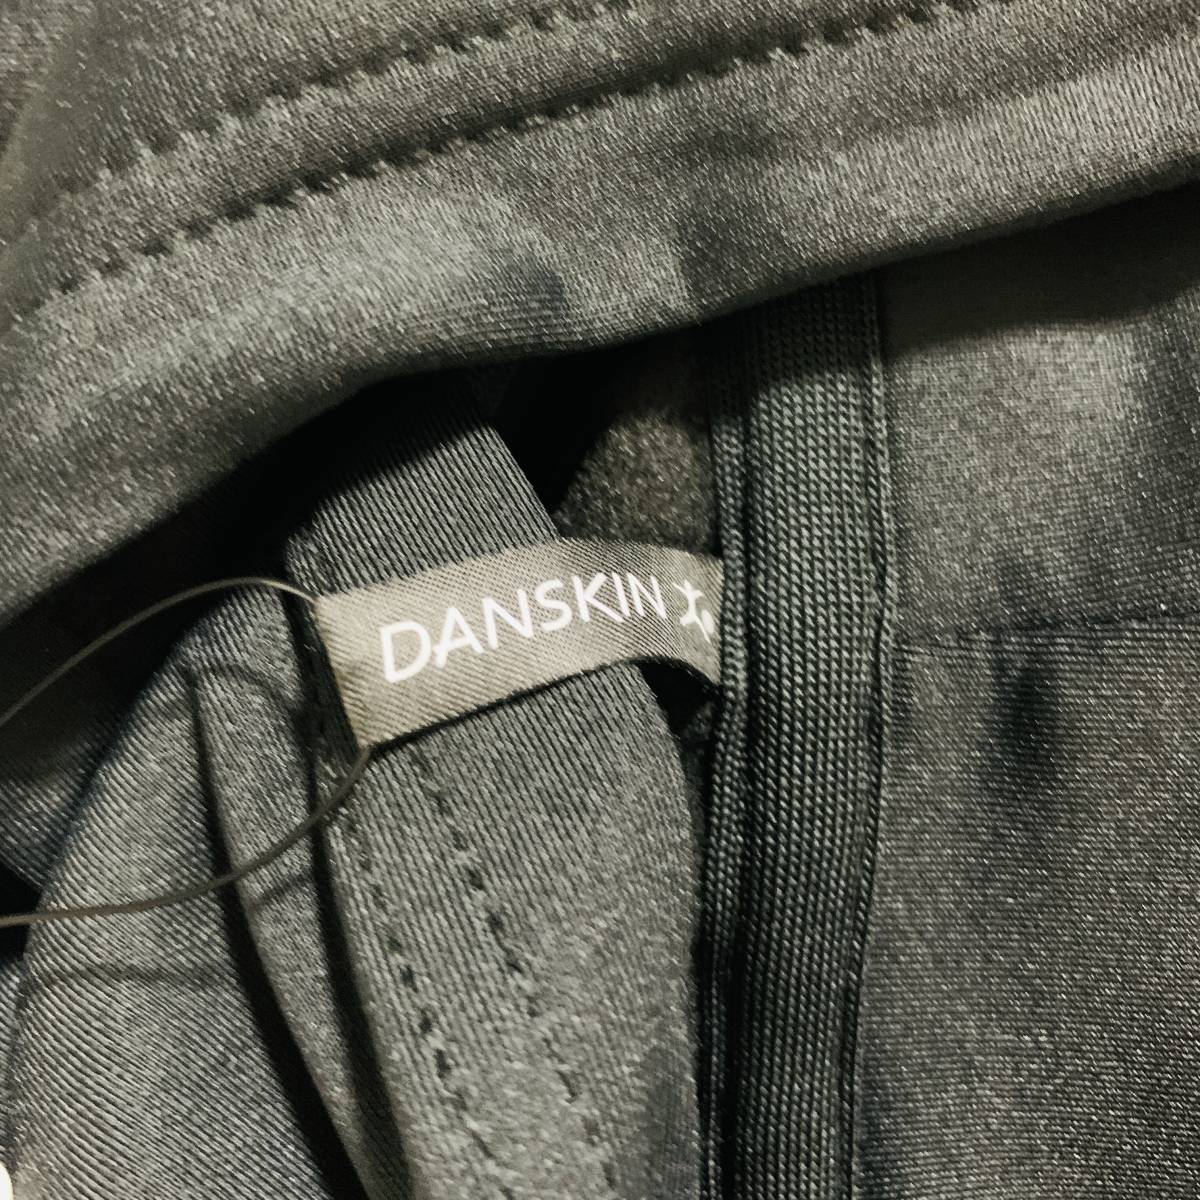 DANSKIN (ダンスキン) - モメンタムストレッチフーディー (レディース) ストレッチパーカー UVカット 黒色 Lサイズ (タグ付き新品未使用品)_実際の商品です⑦